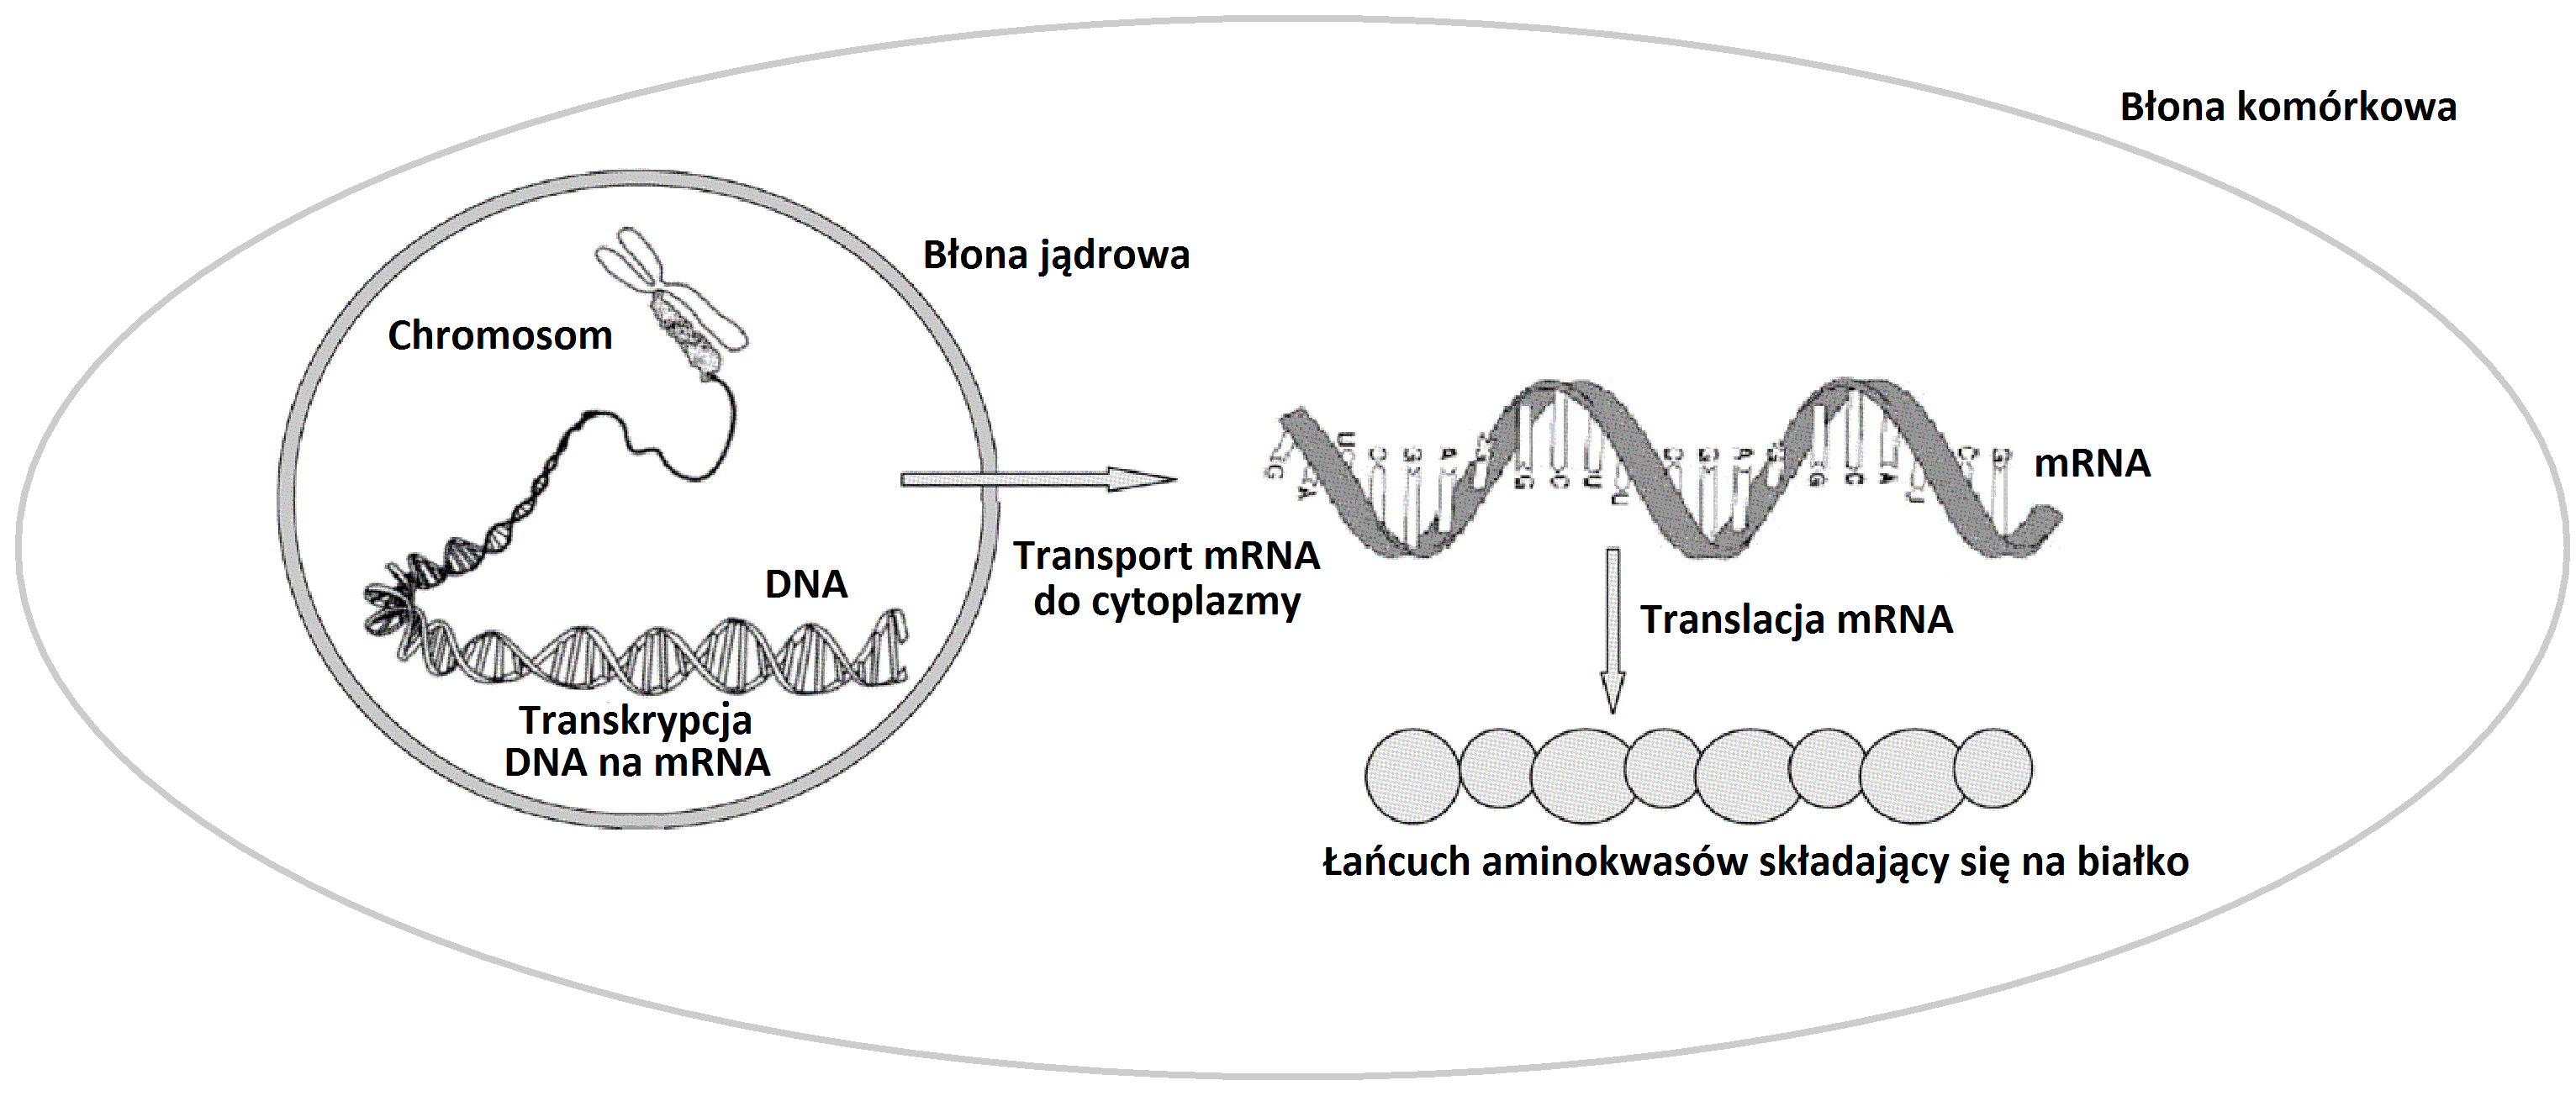 Uproszczony schemat ekspresji białka ({\em Źródło: http://pmj.bmj.com/}).